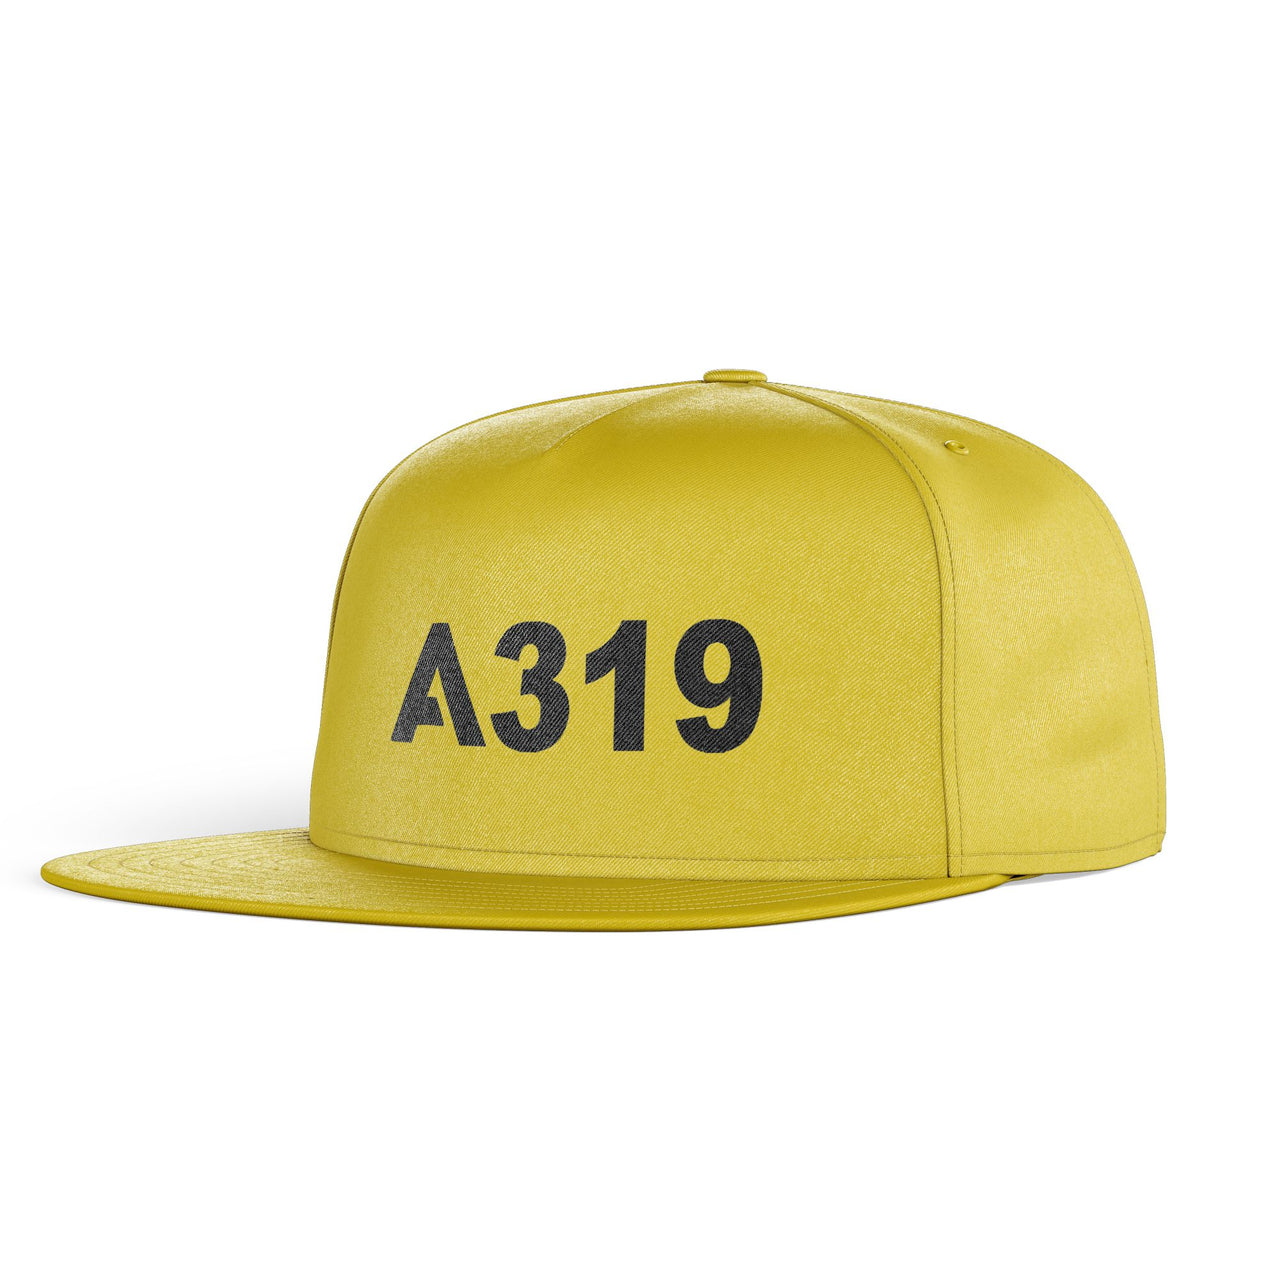 A319 Flat Text Designed Snapback Caps & Hats